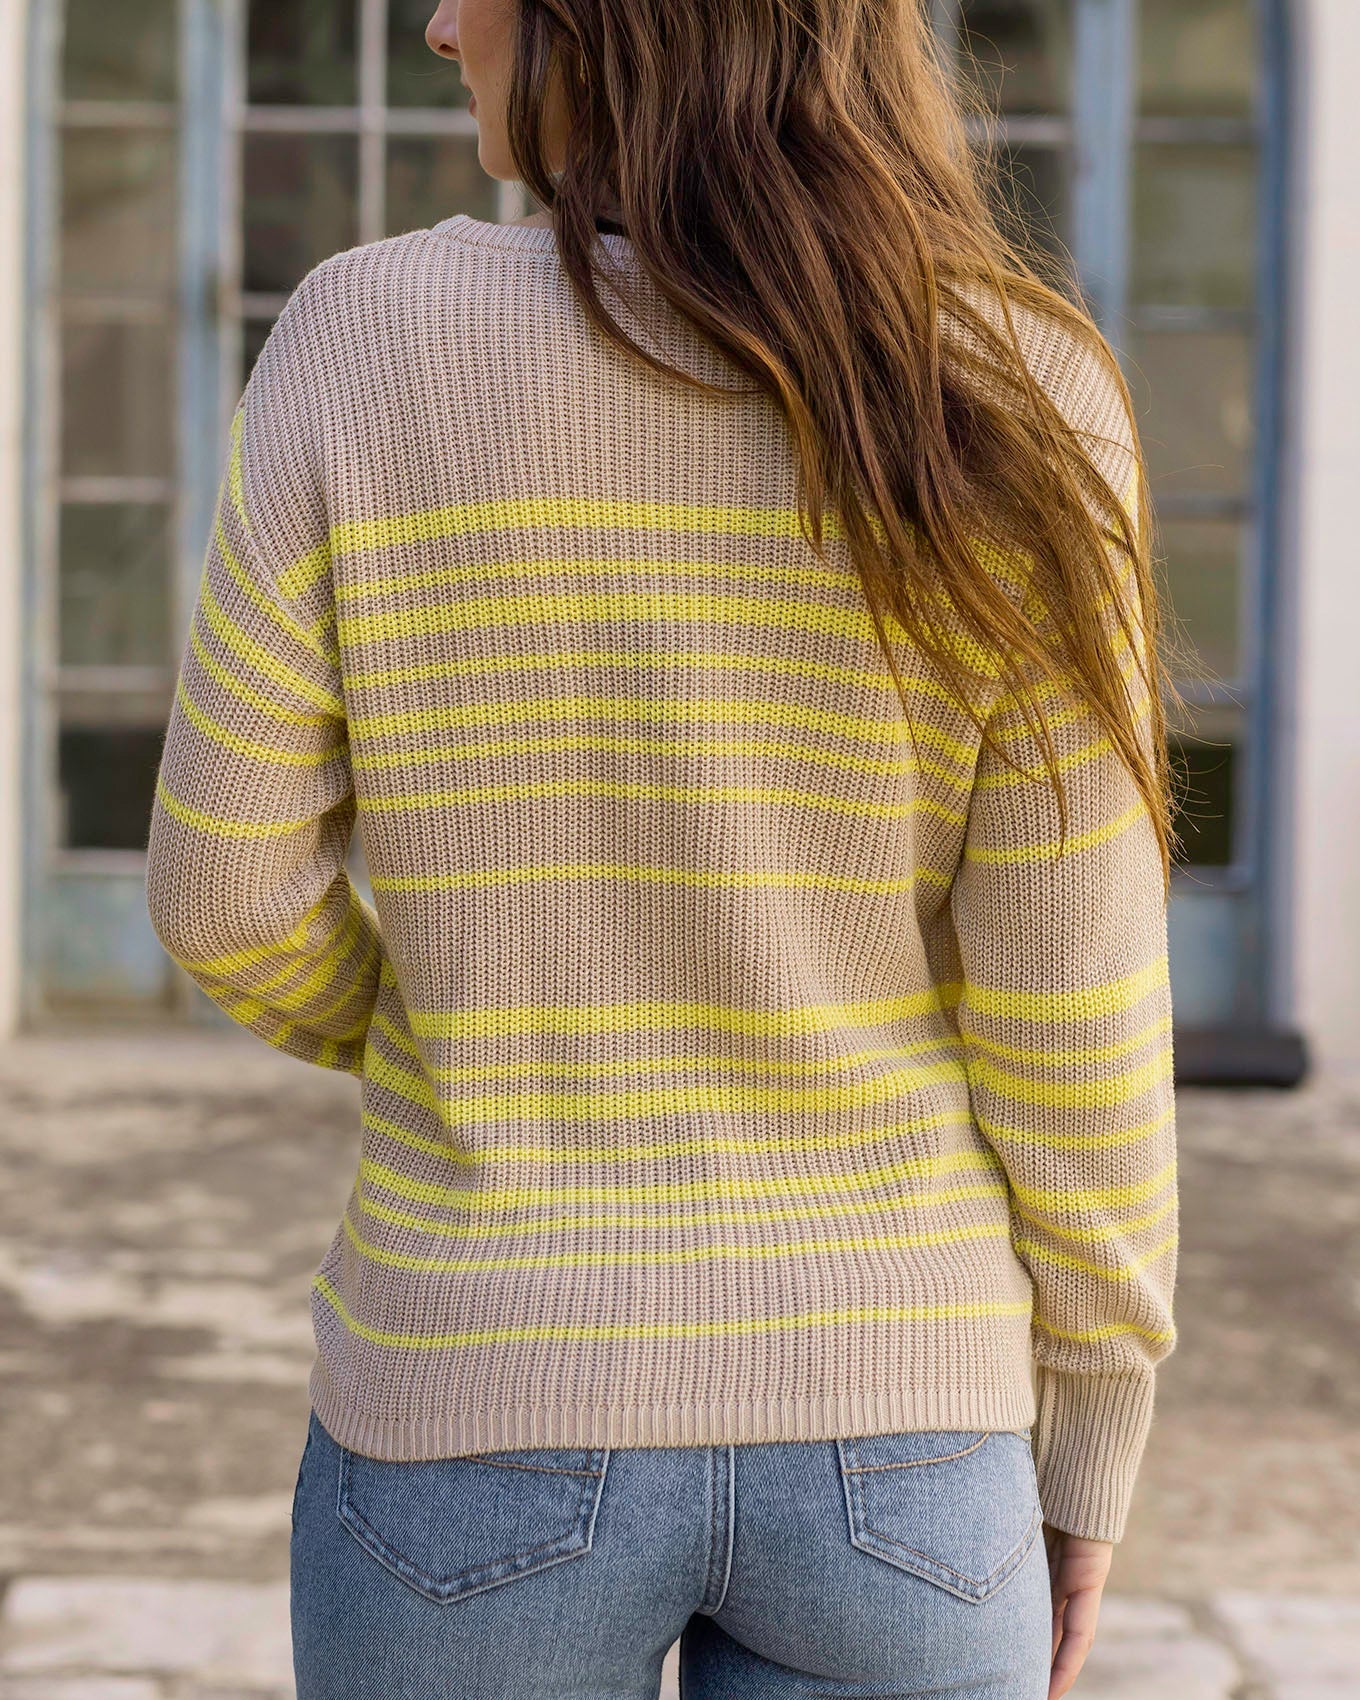 Lemon Lines Lightweight Sweater by Grace & Lace (Ships in 1-2 Weeks)